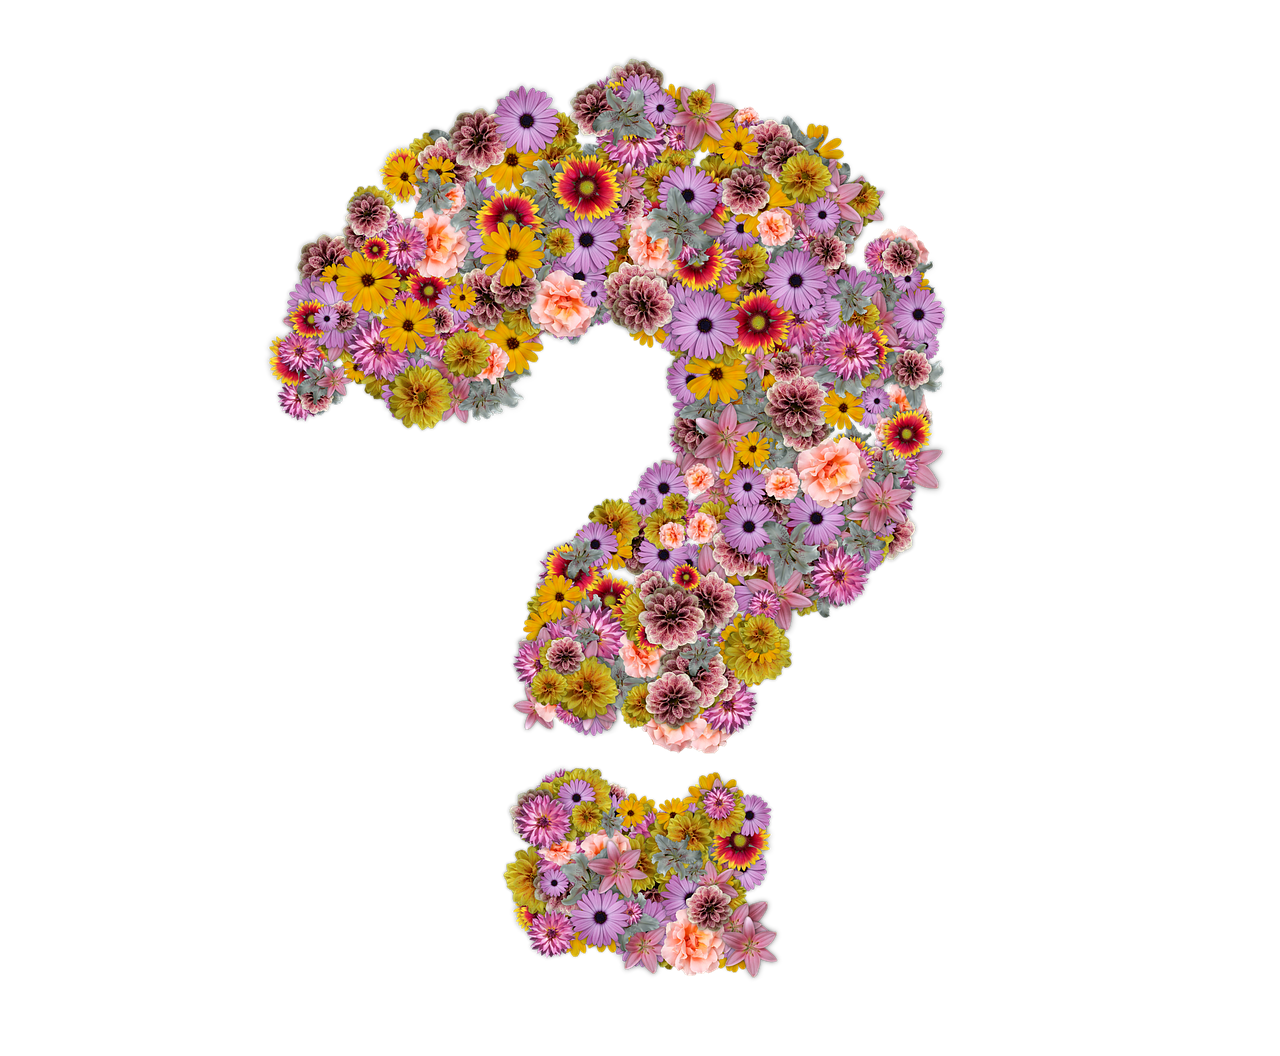 https://pixabay.com/en/question-mark-flowers-design-floral-2930474/